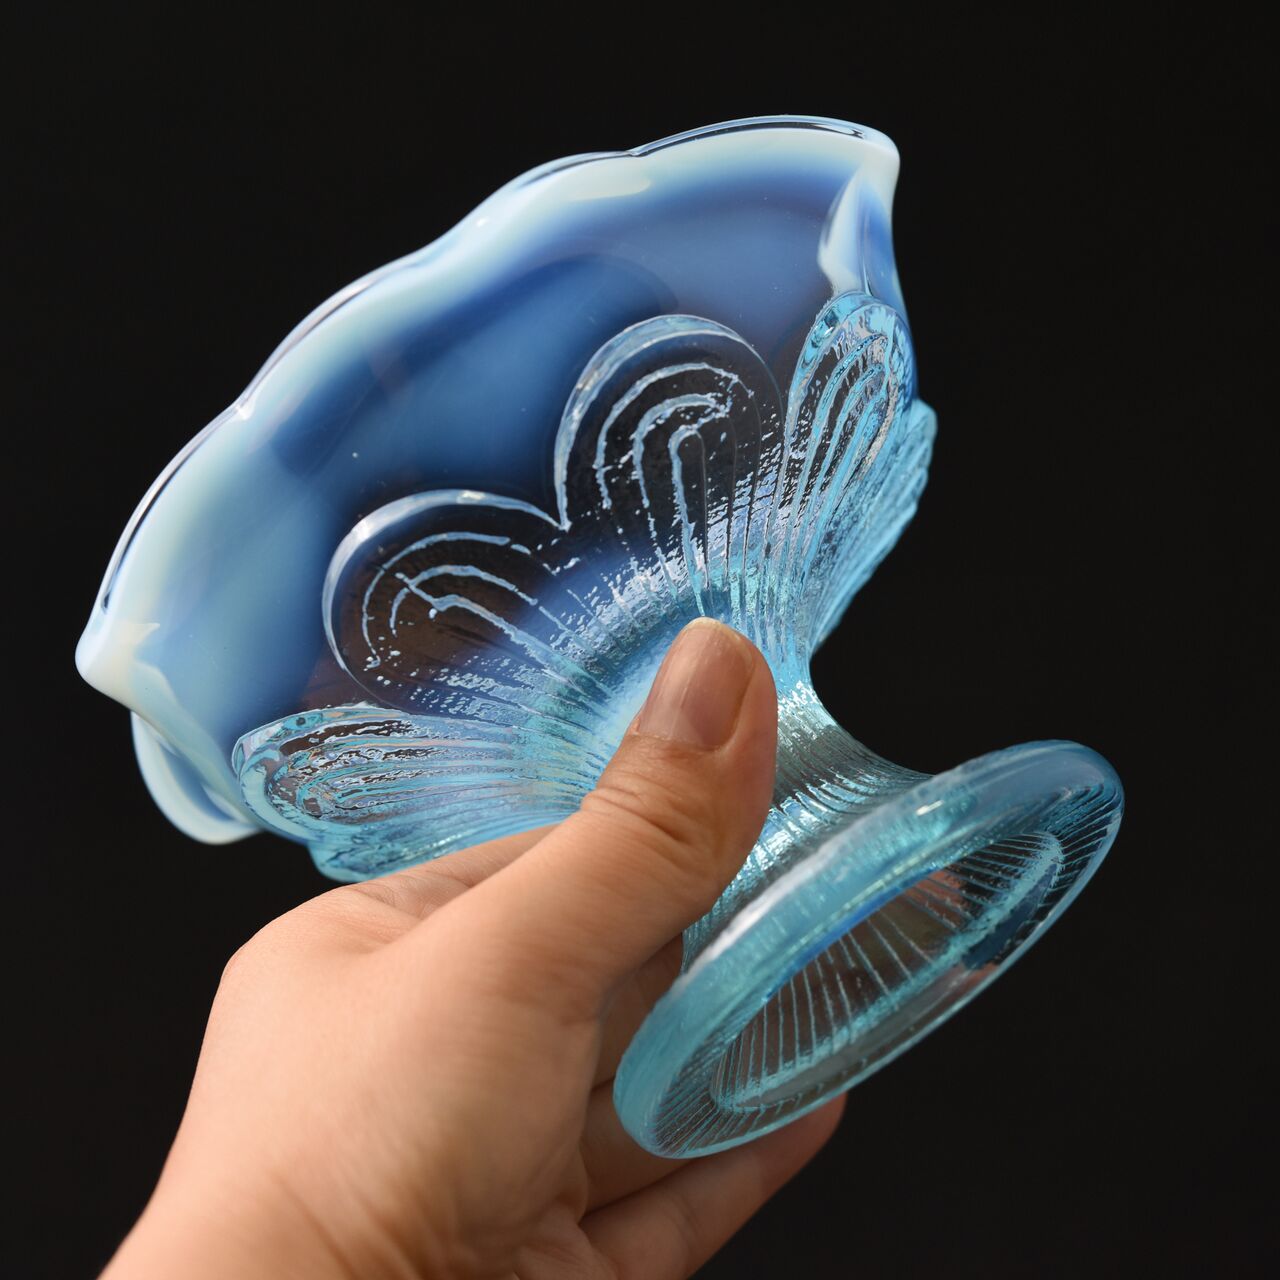 ガラス :: 水色乳白ぼかし花縁プレスガラス氷コップ | COTTOU.JP 骨董 